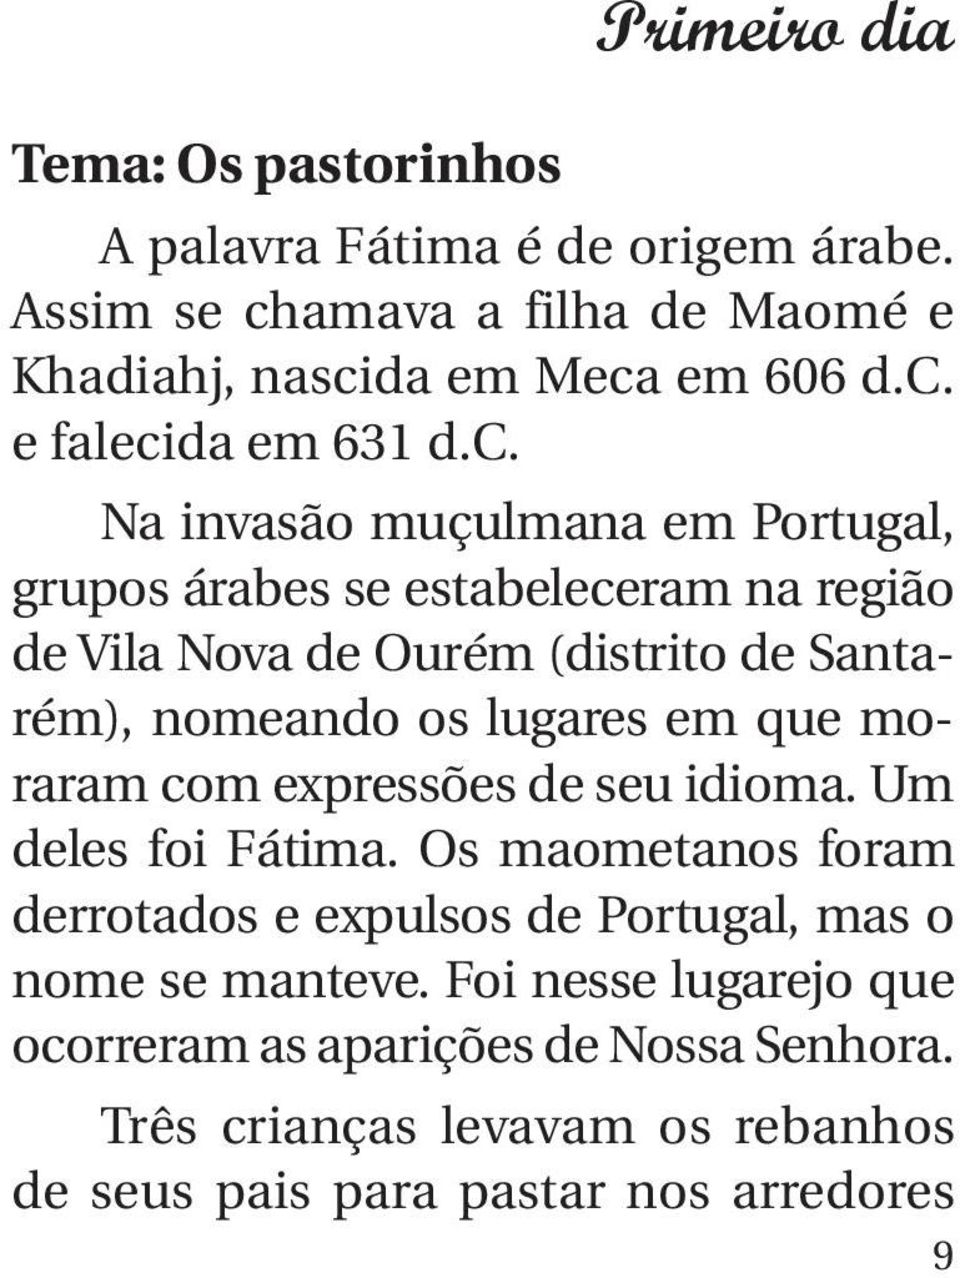 que moraram com expressões de seu idioma. Um deles foi Fátima. Os maometanos foram derrotados e expulsos de Portugal, mas o nome se manteve.